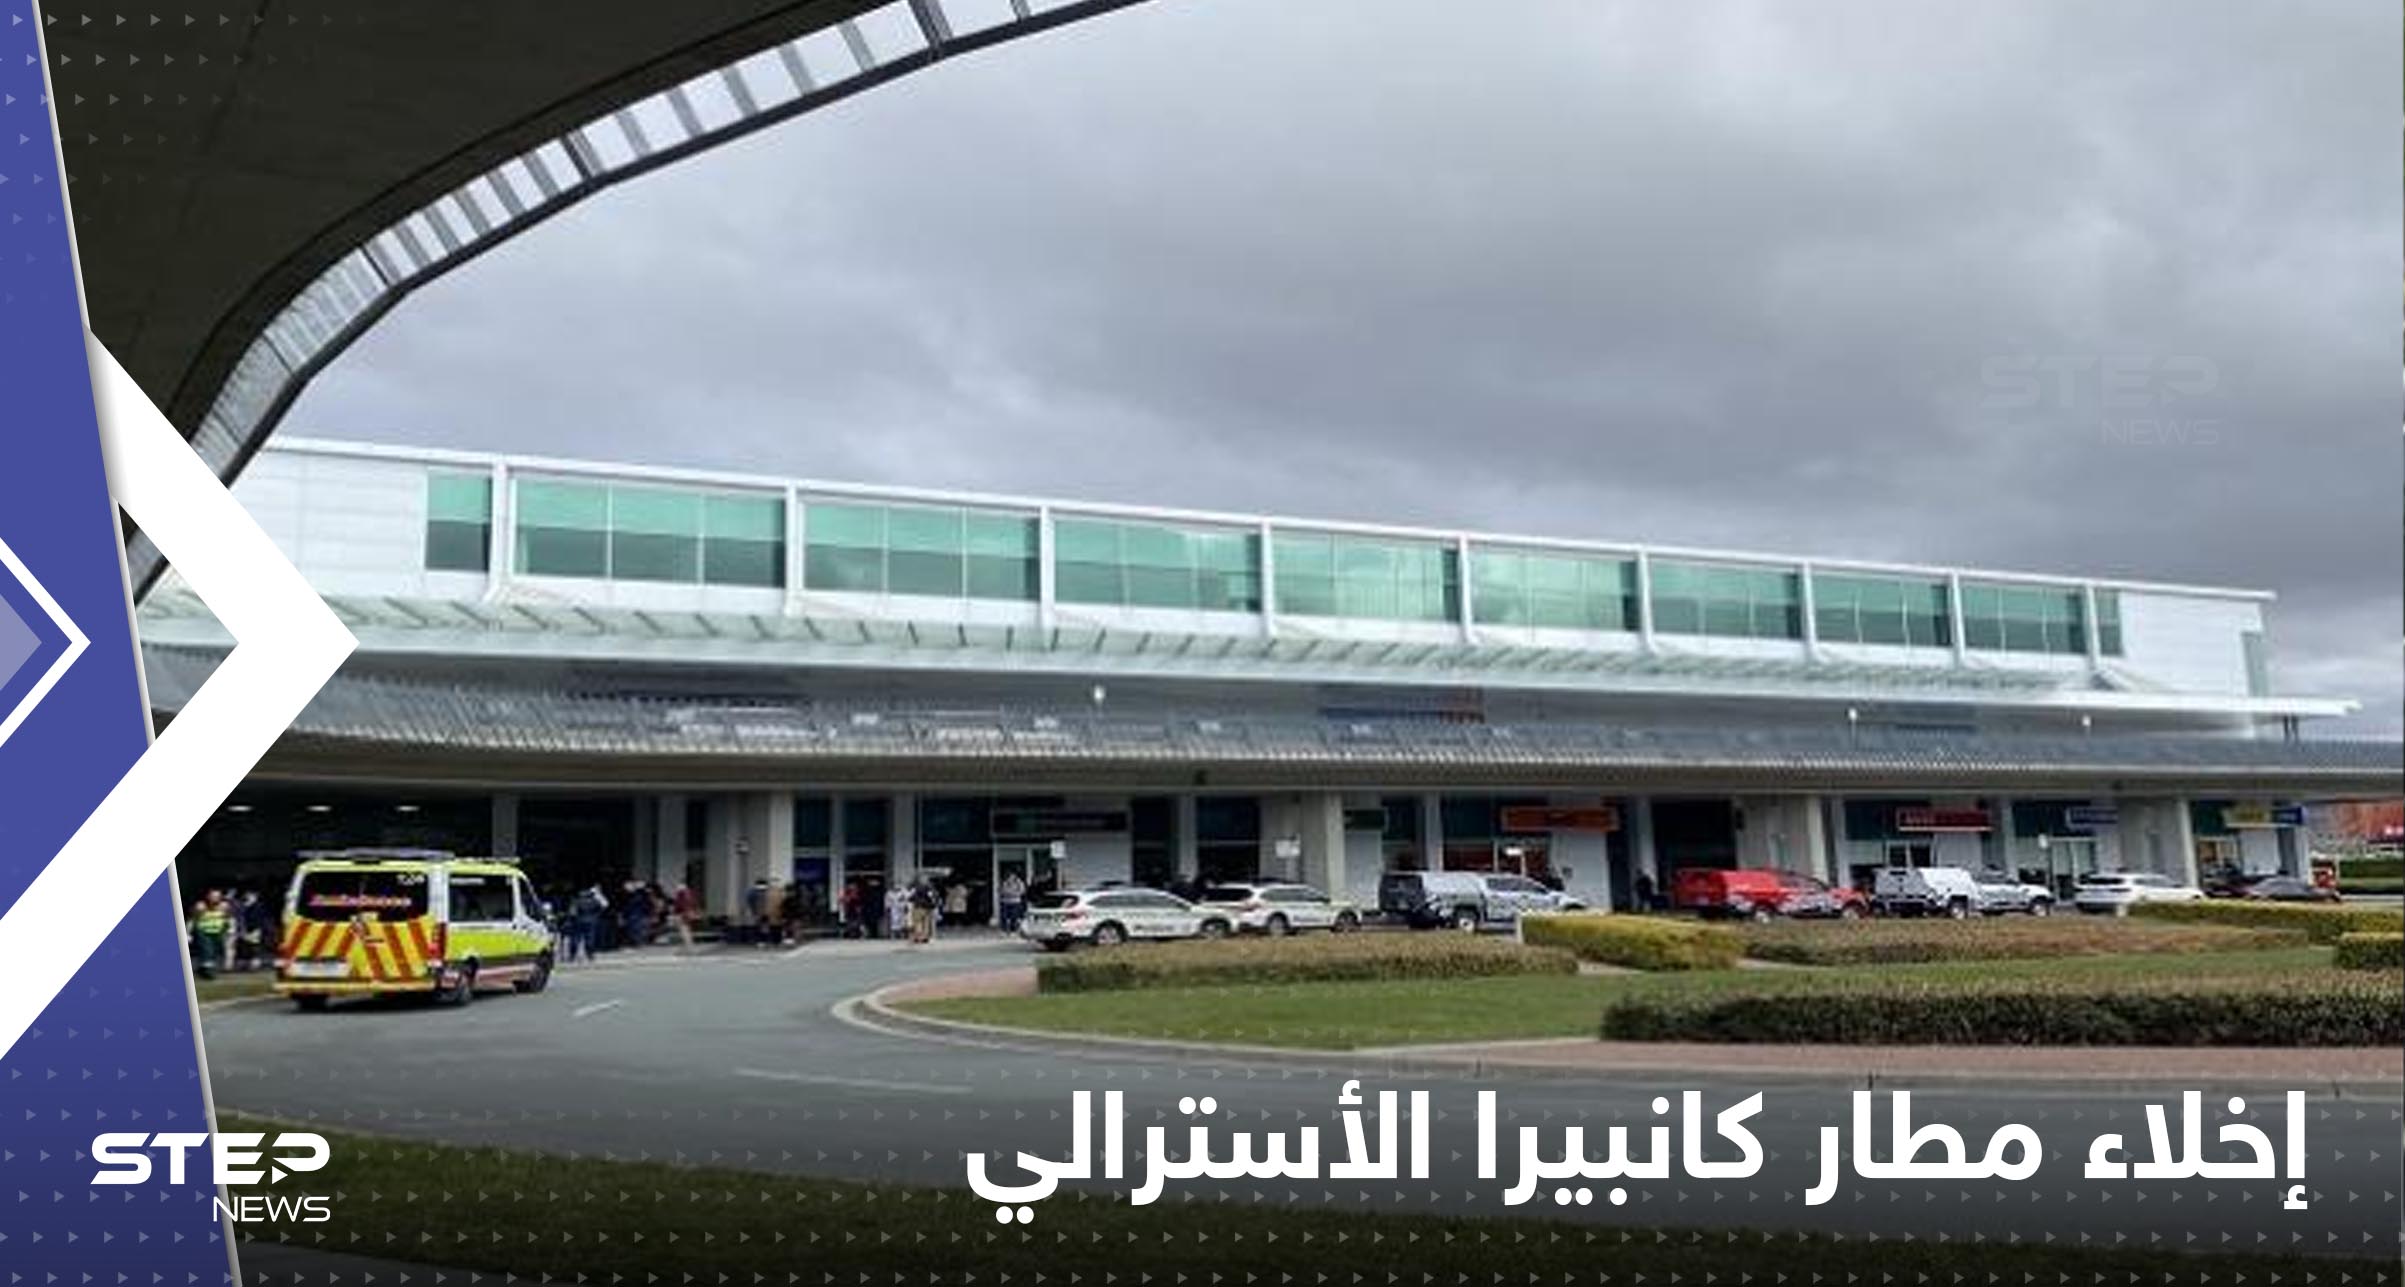 شاهد|| مطار كانبيرا الأسترالي يتحول لثكنة عسكرية بعد حادثة إطلاق نار واعتقال المشتبه به